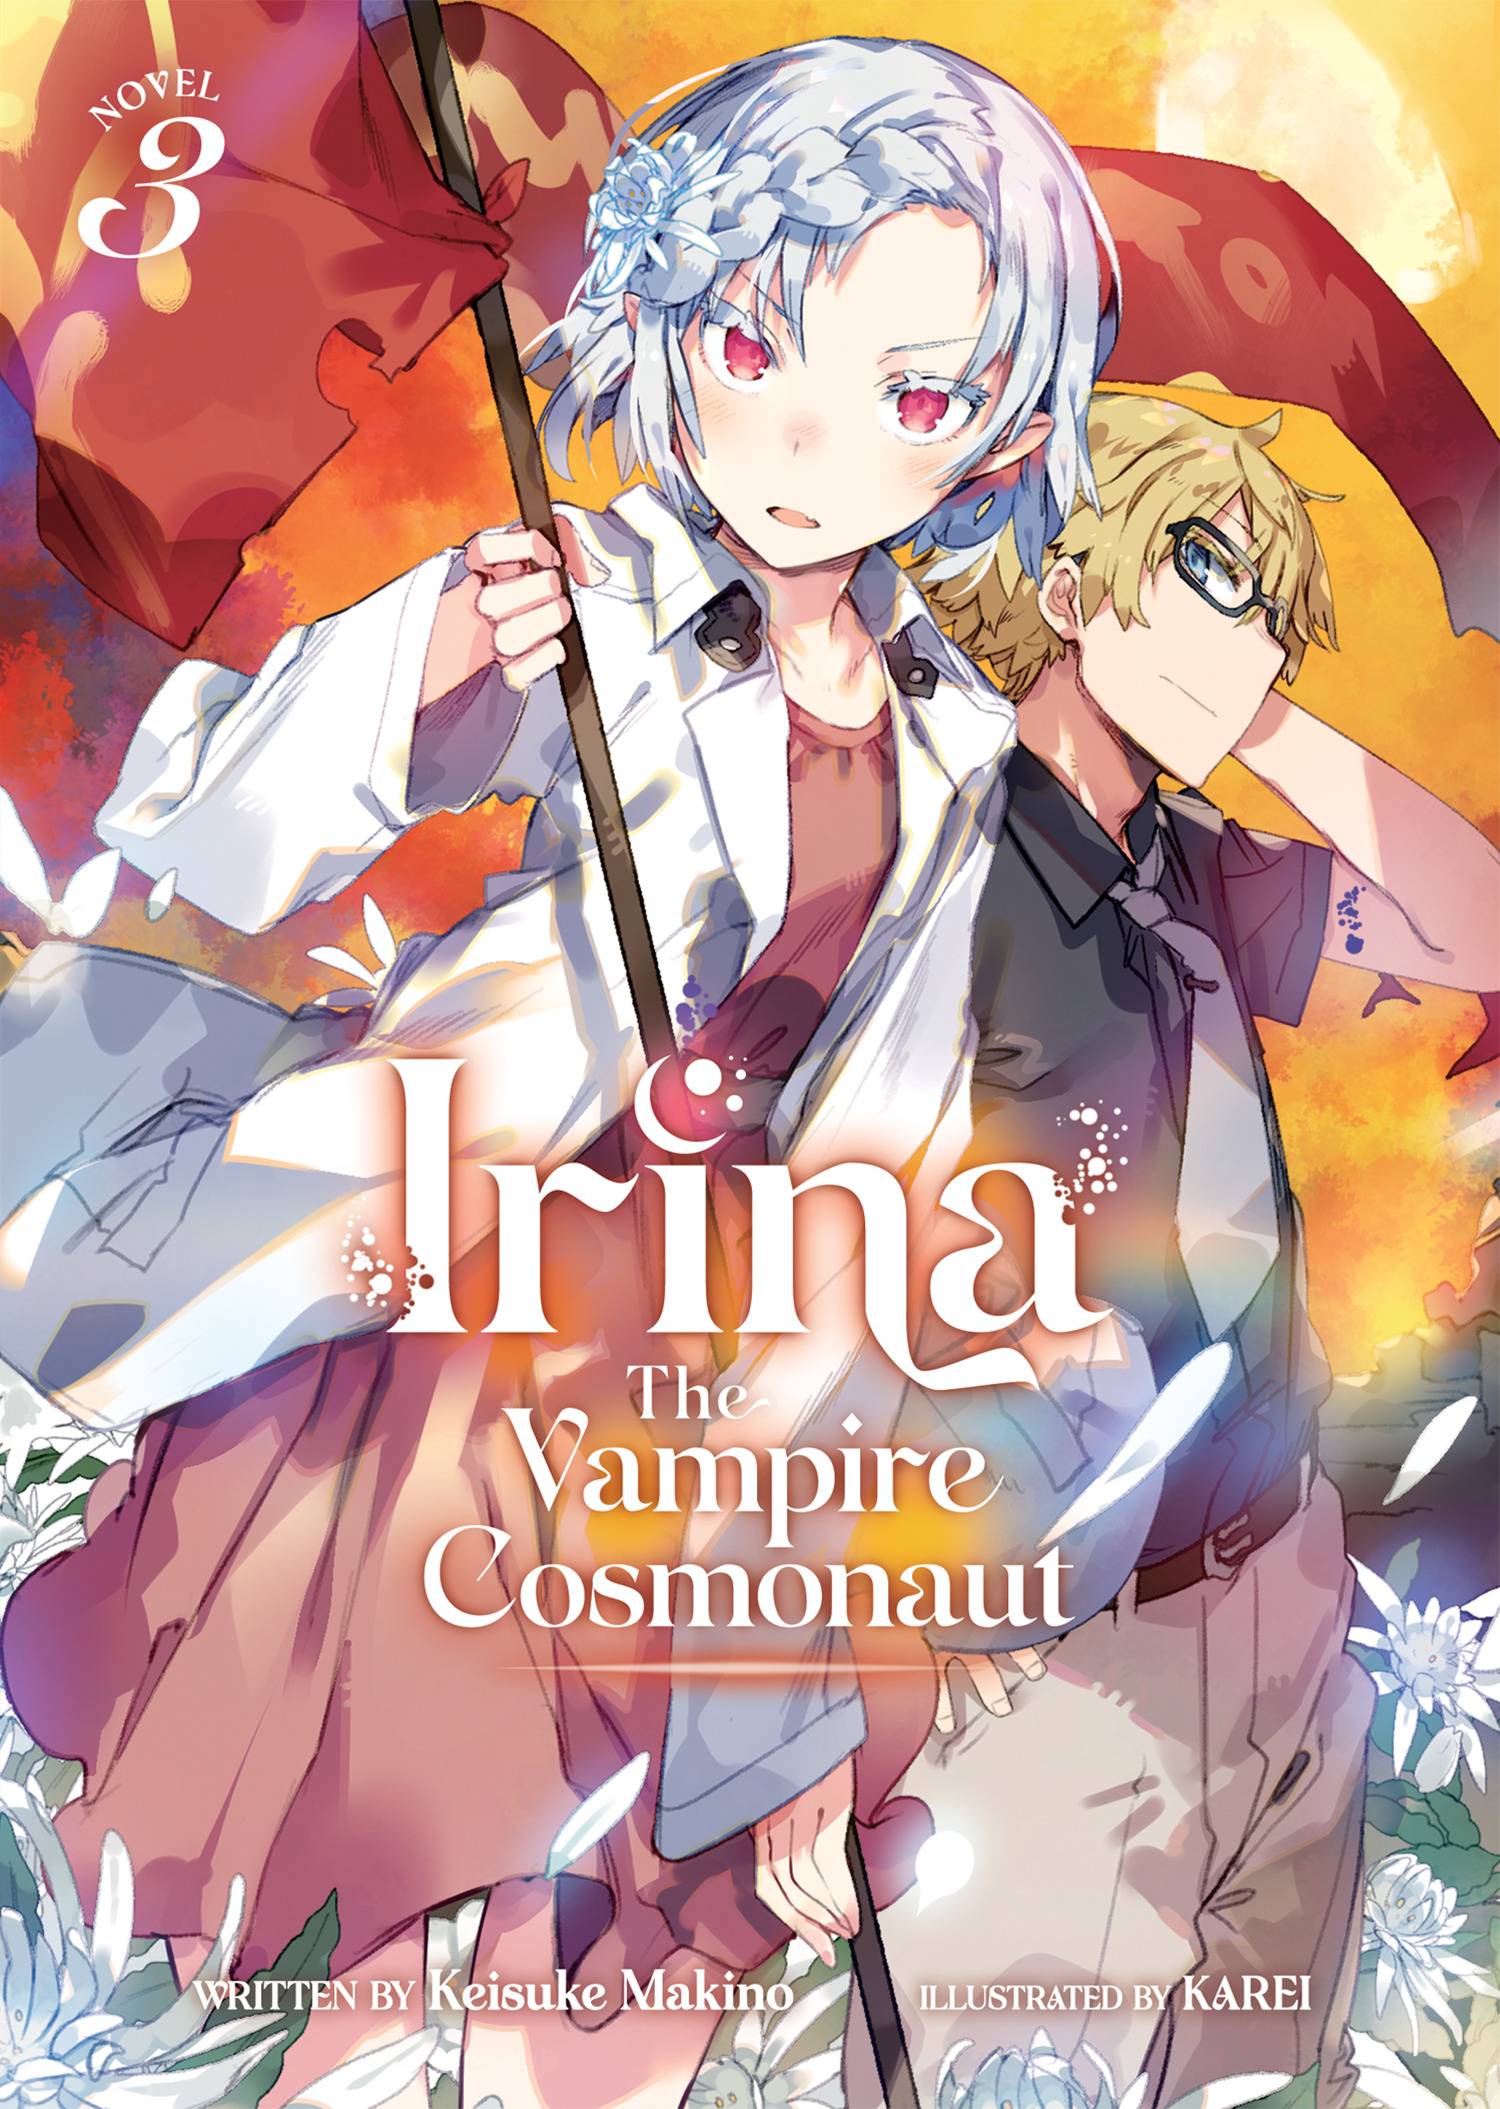 Irina: The Vampire Cosmonaut (Light Novel) Vol. 03